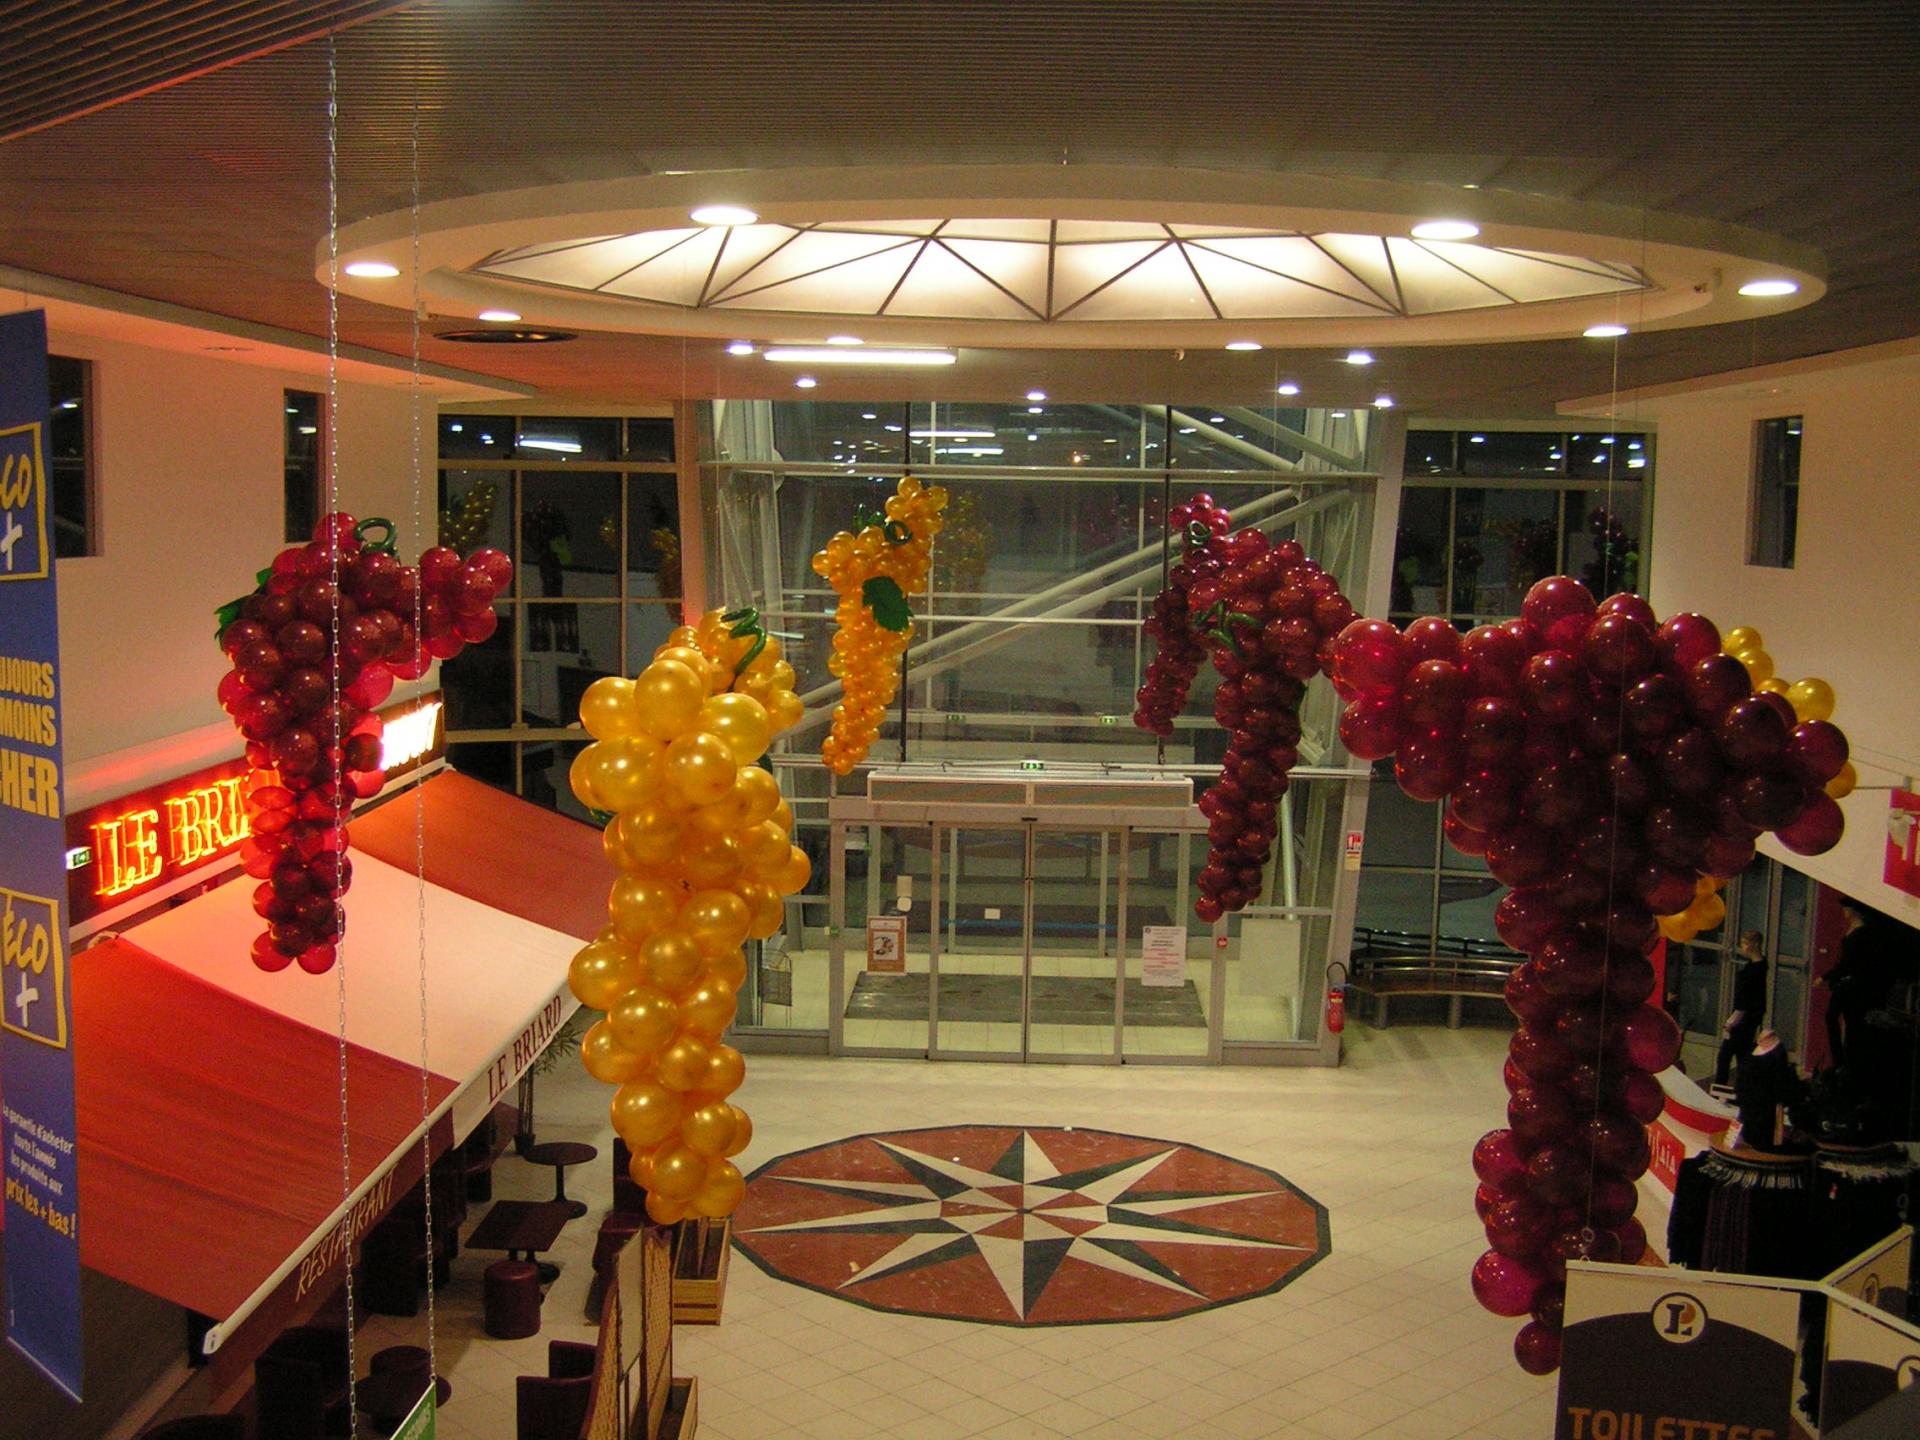 Cascade de grappes de raisin bordeaux et or